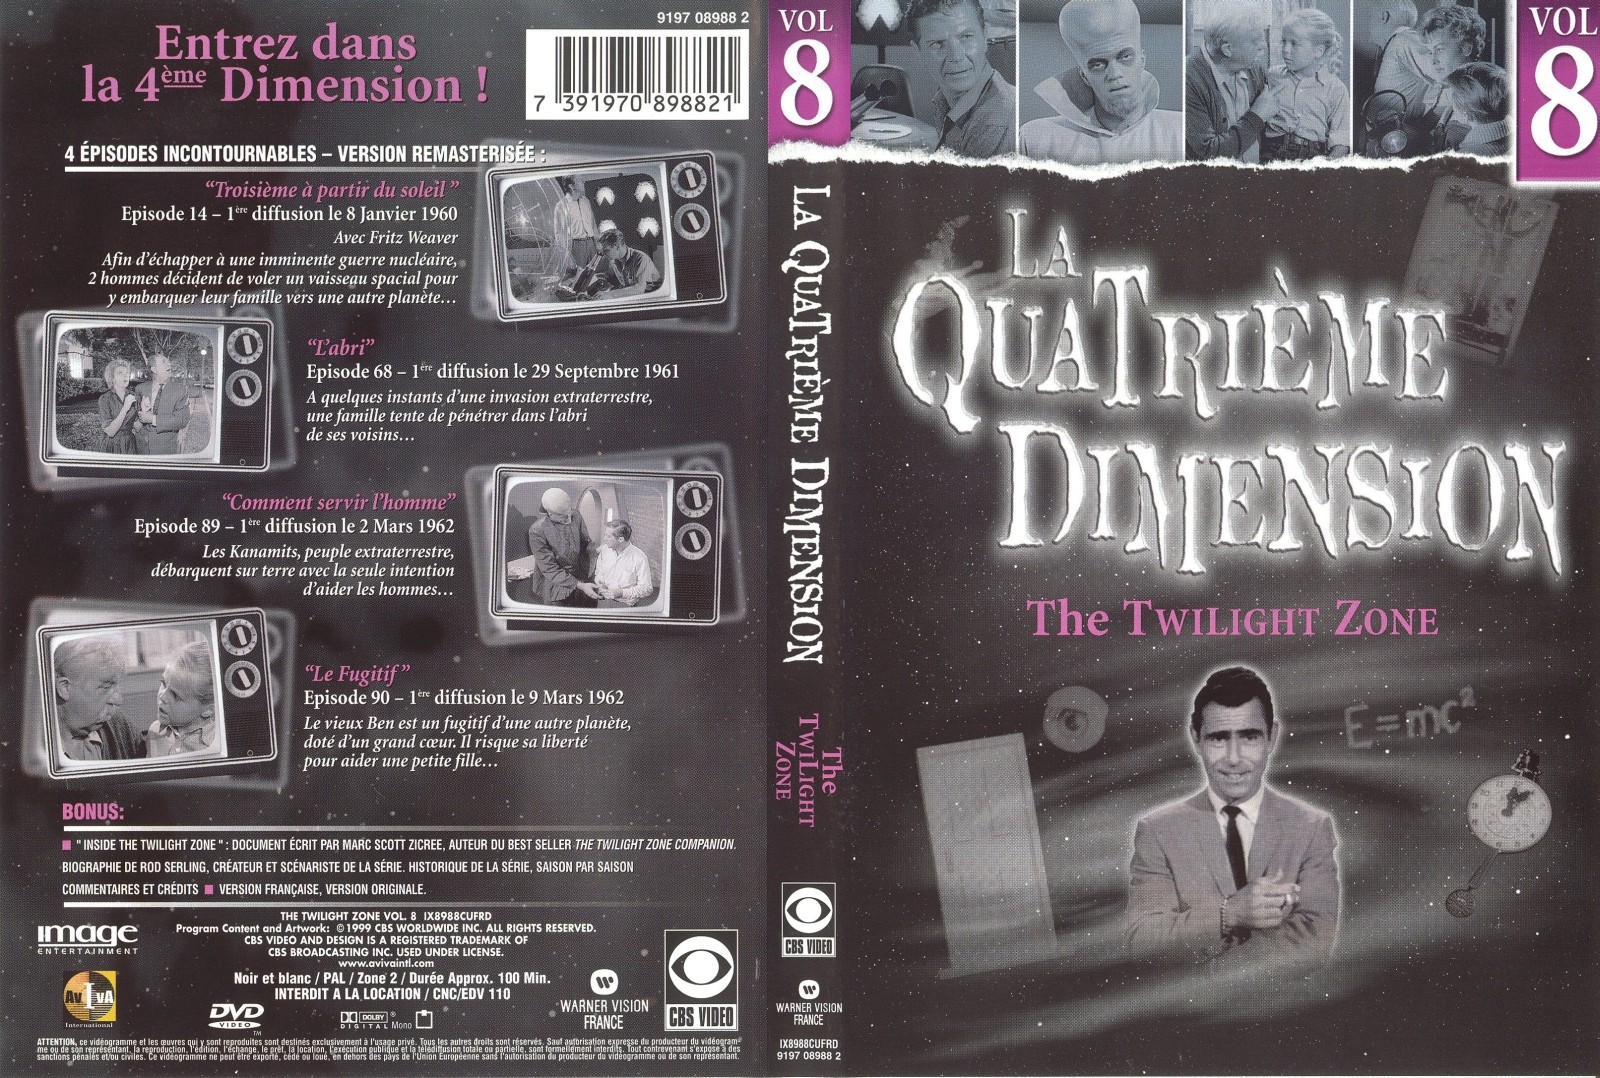 Jaquette DVD La quatrieme dimension vol 8